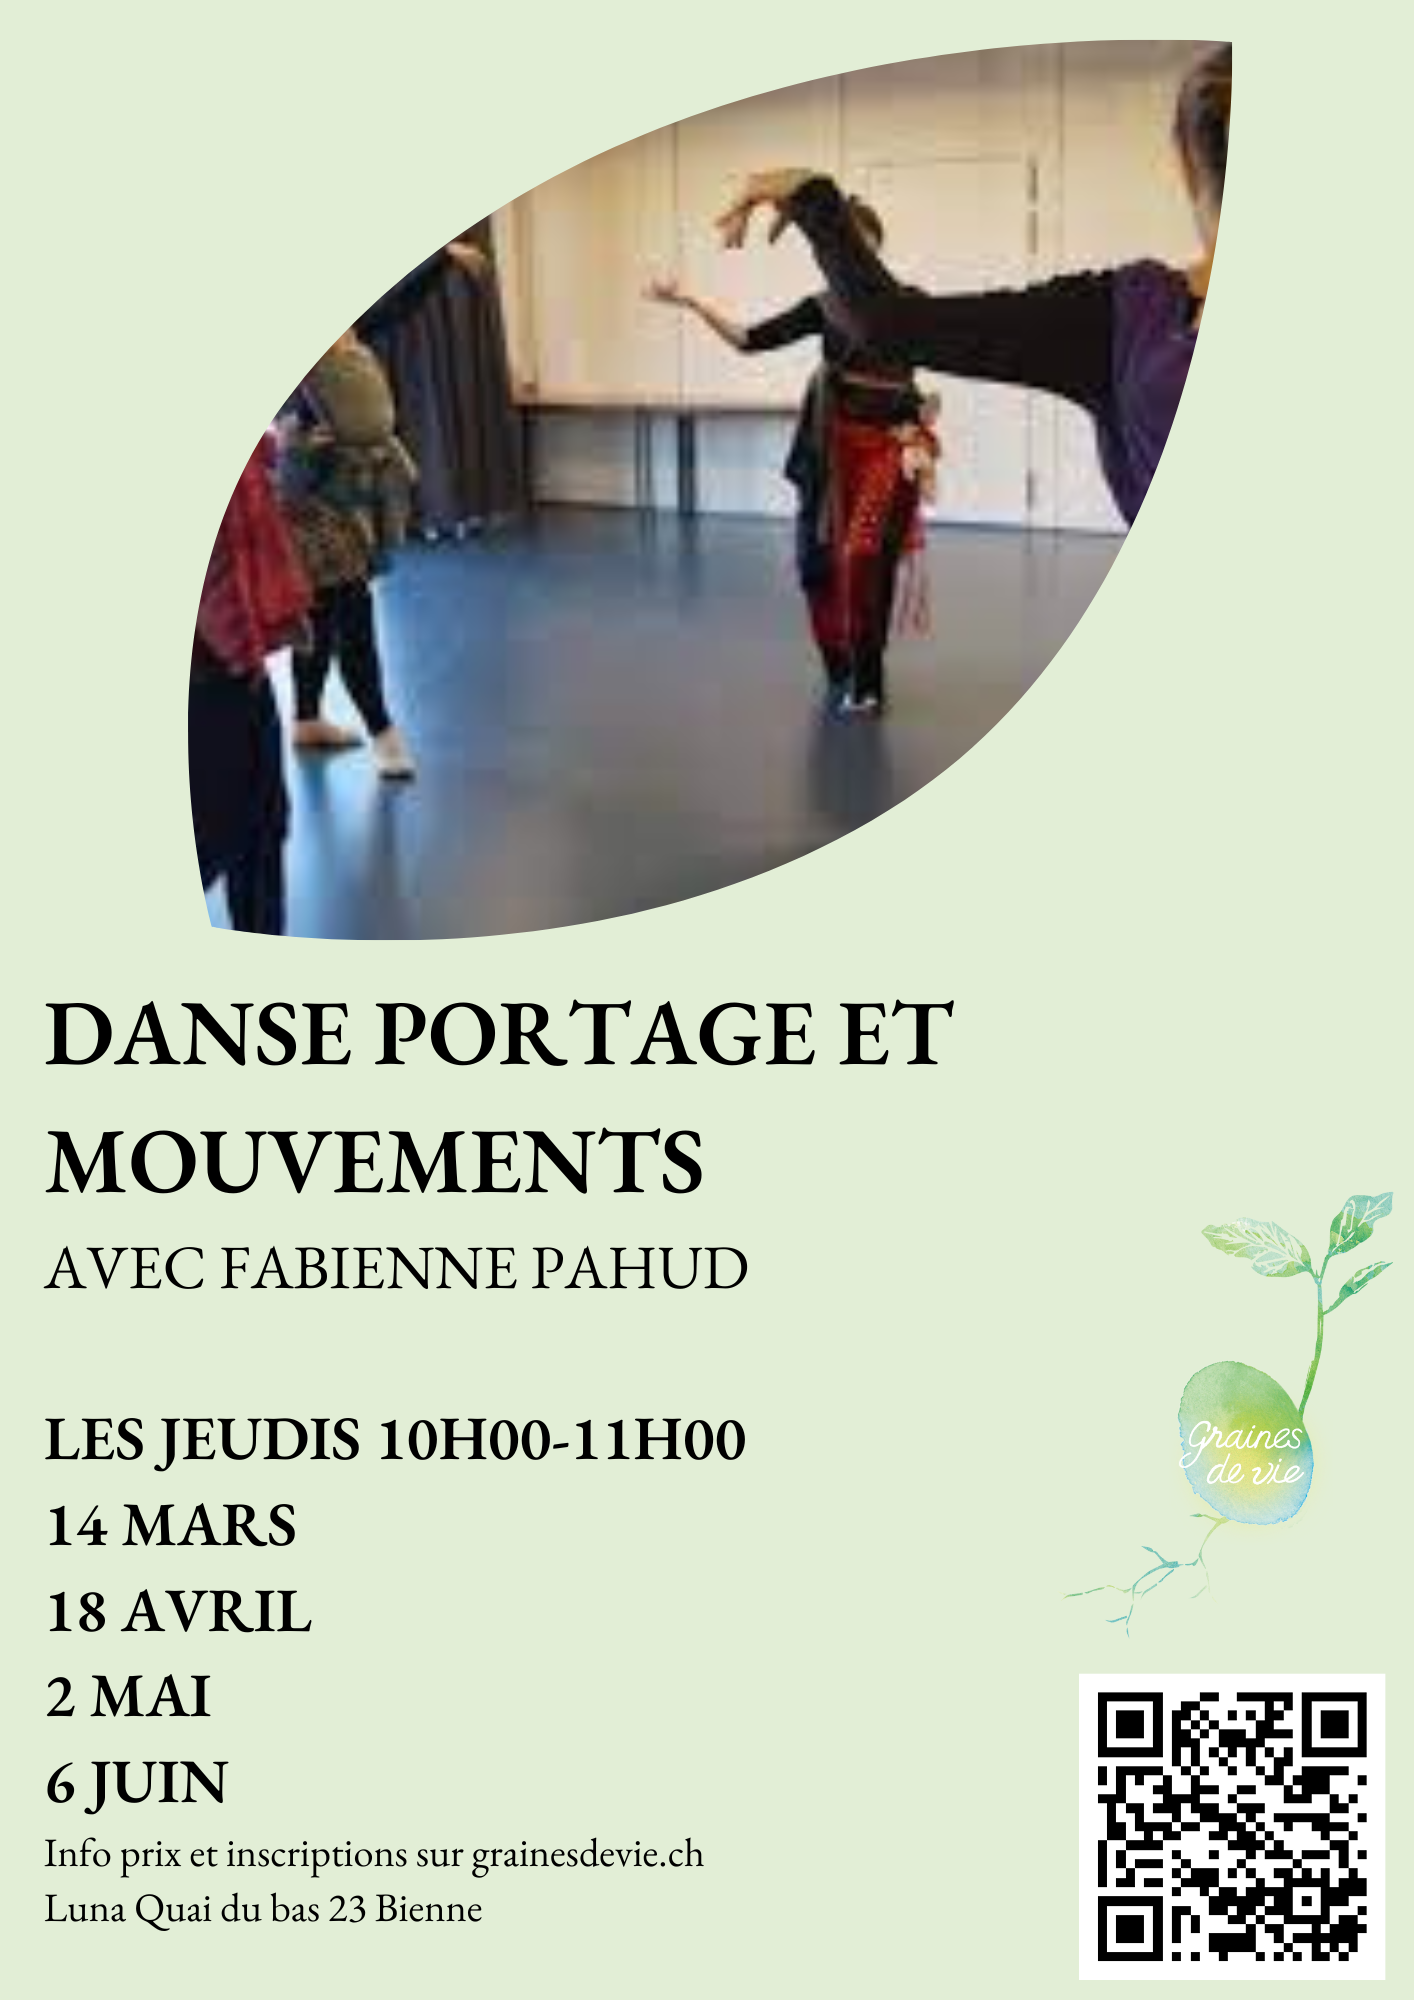 Danse portage et mouvements